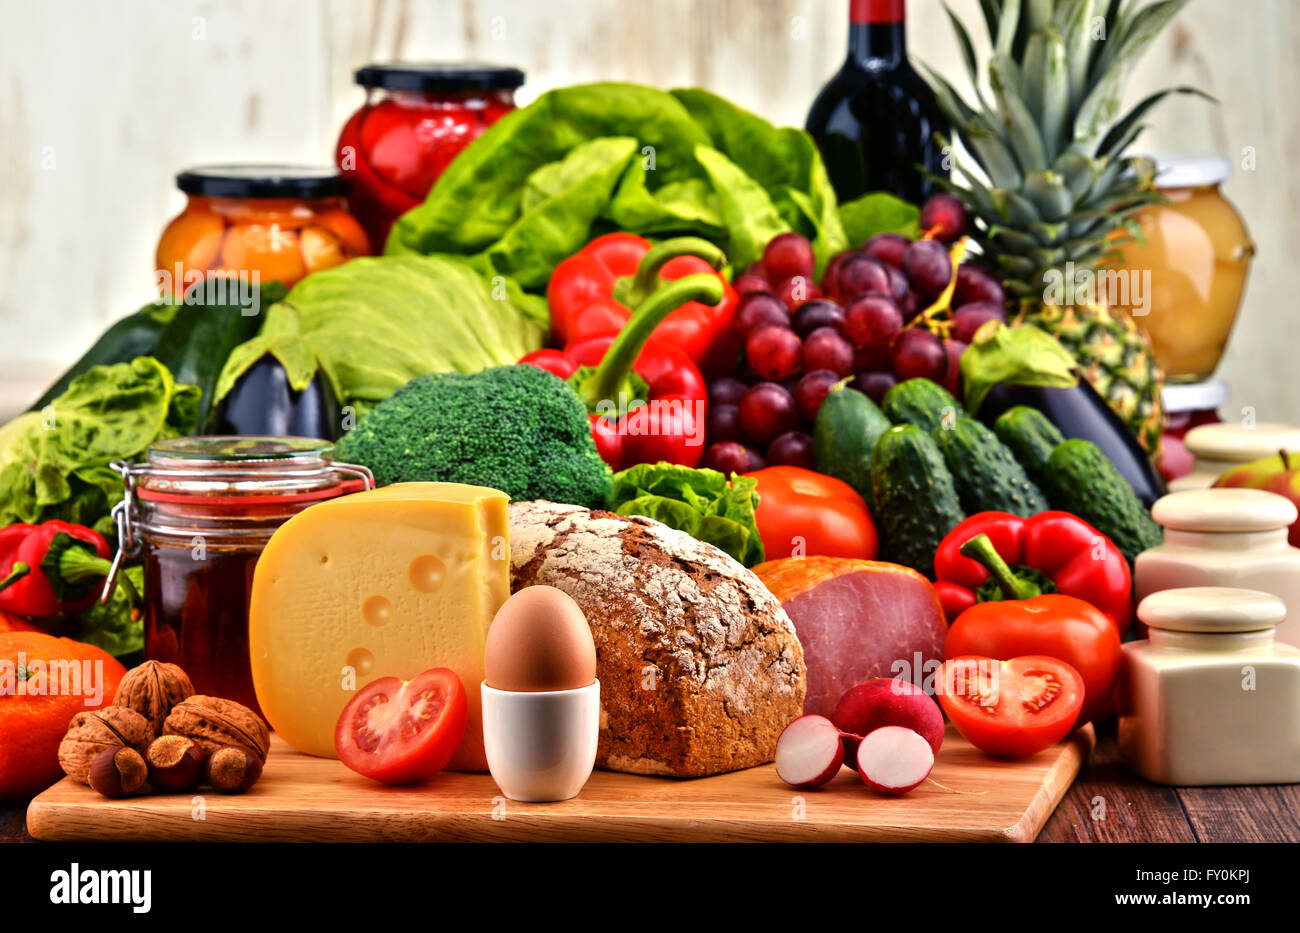 Vielzahl von Bio-Lebensmitteln einschließlich Gemüse Obst Brot Milch- und Fleischproduktion. Ausgewogene Ernährung. Stockfoto